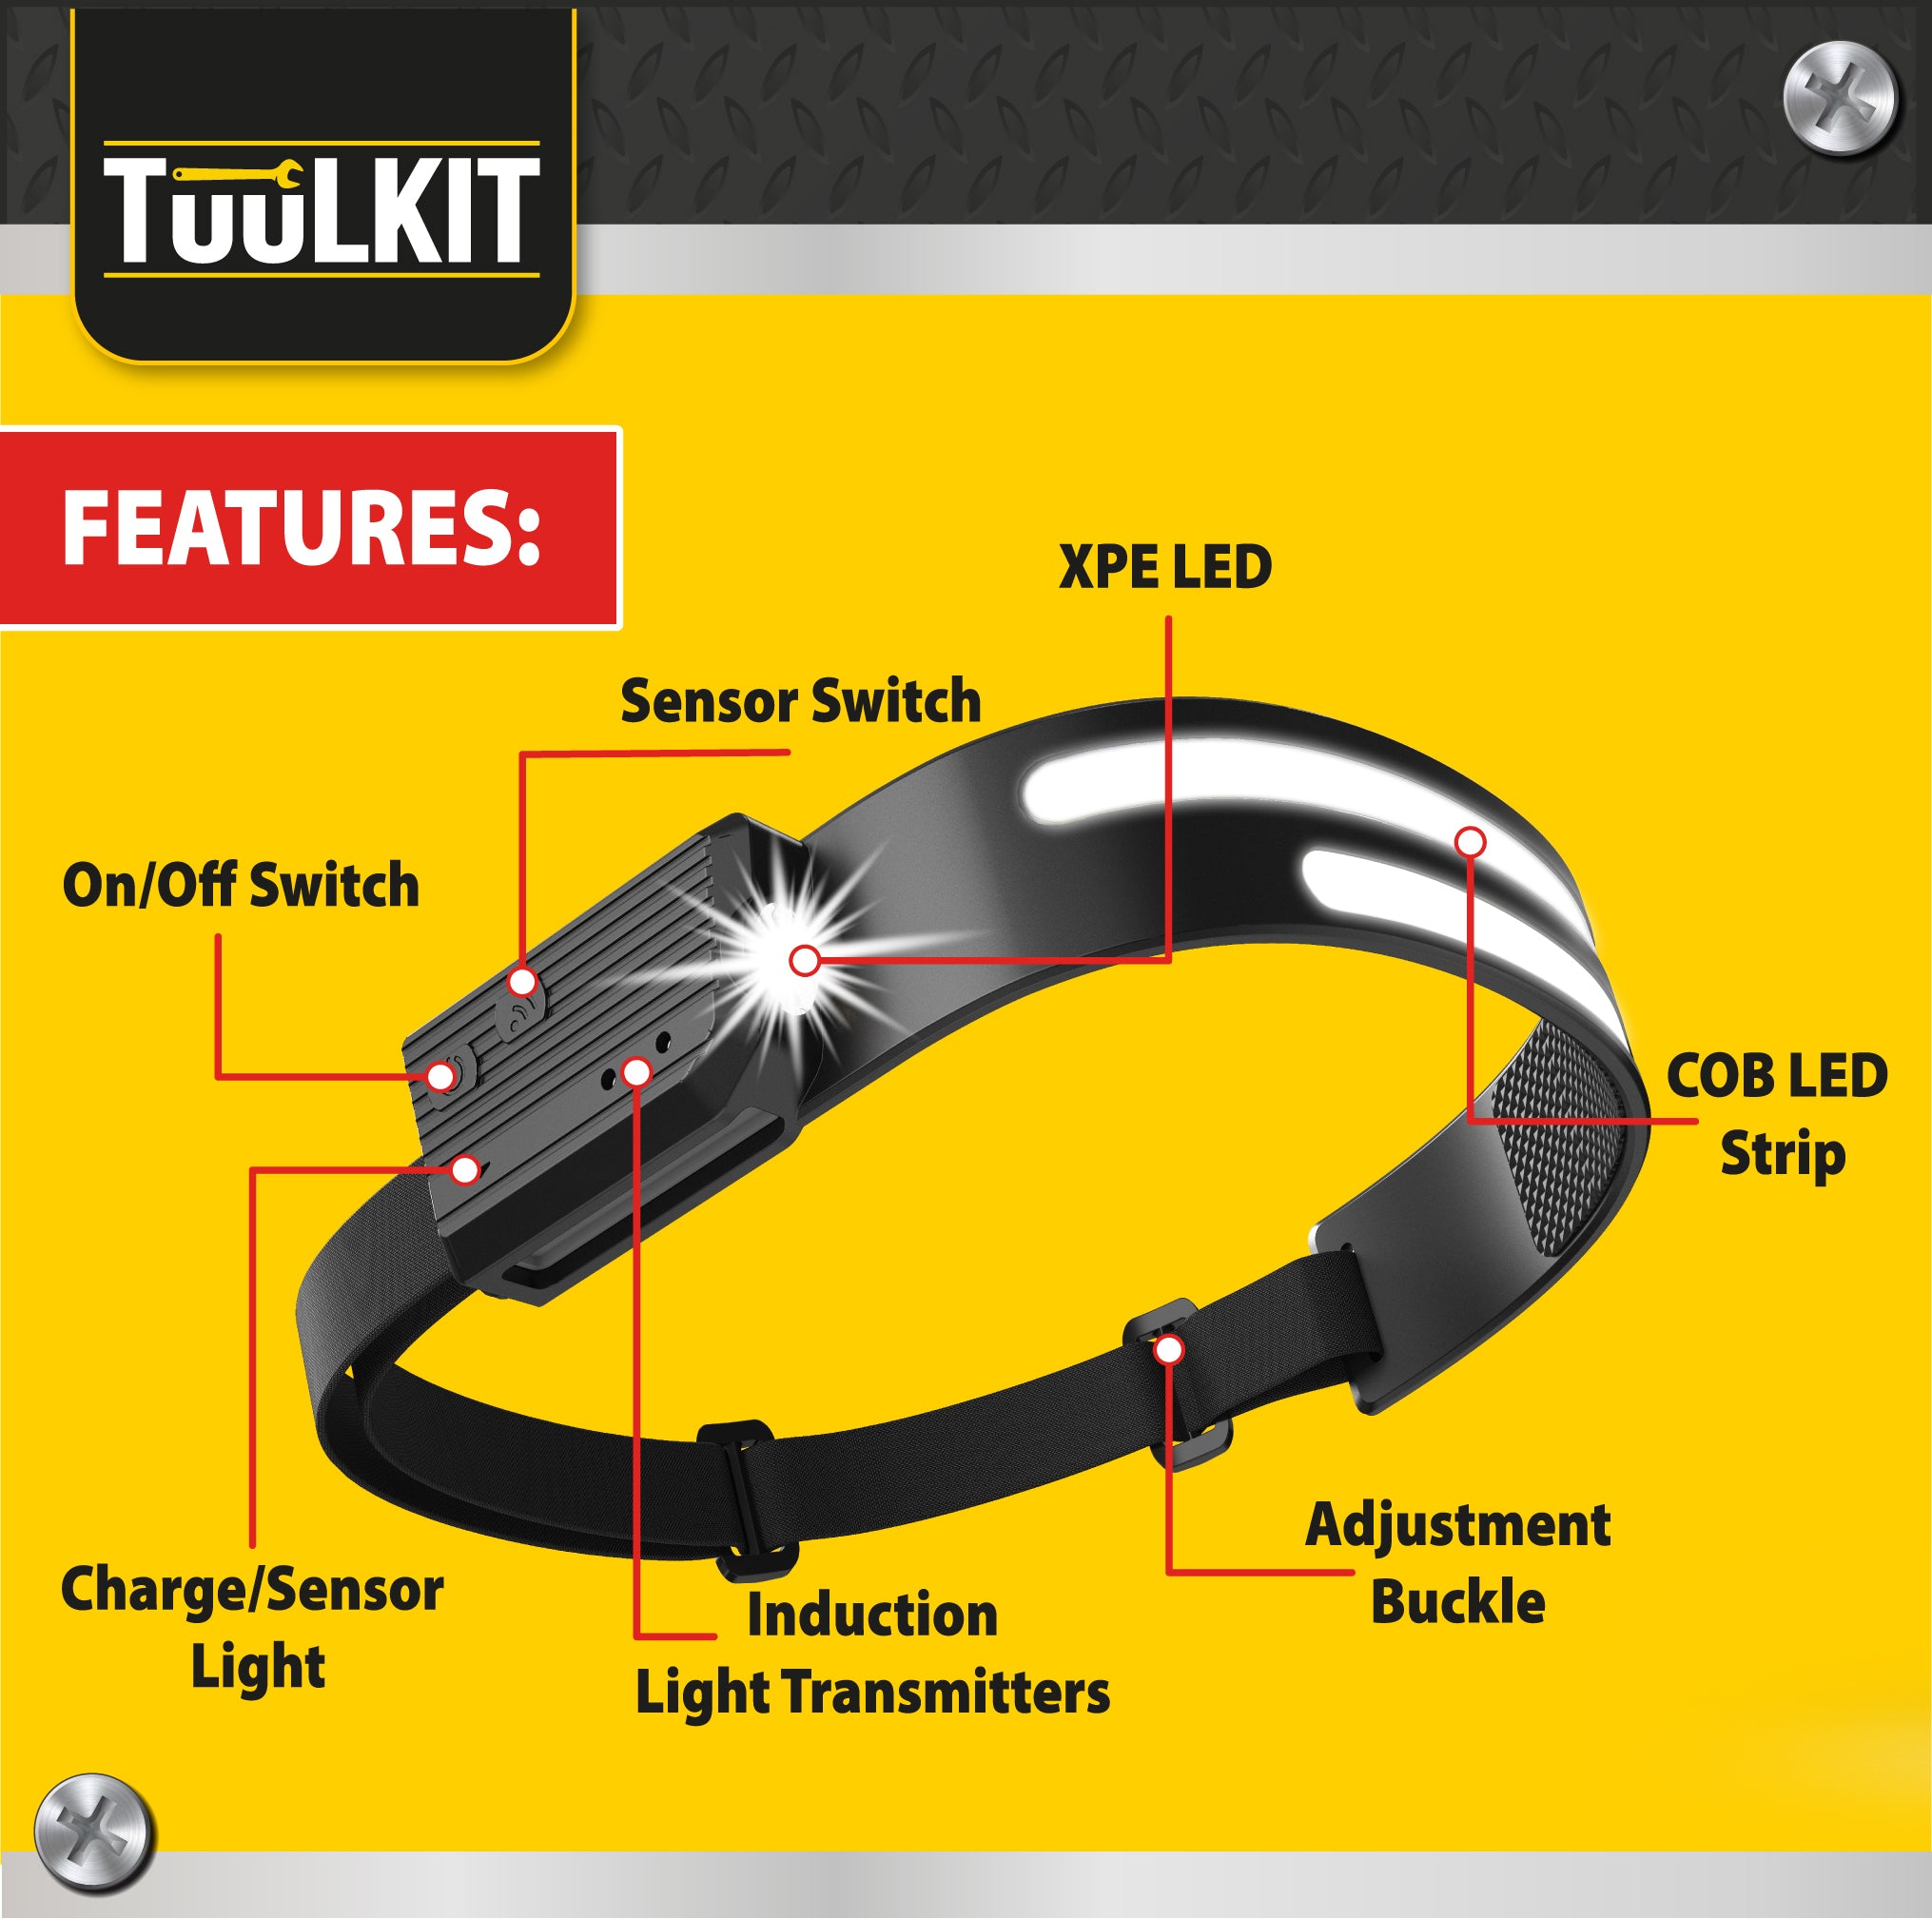 Head Torch | Headlamp | Motion Sensor Headtorch | Lightweight Headtorch - DSL